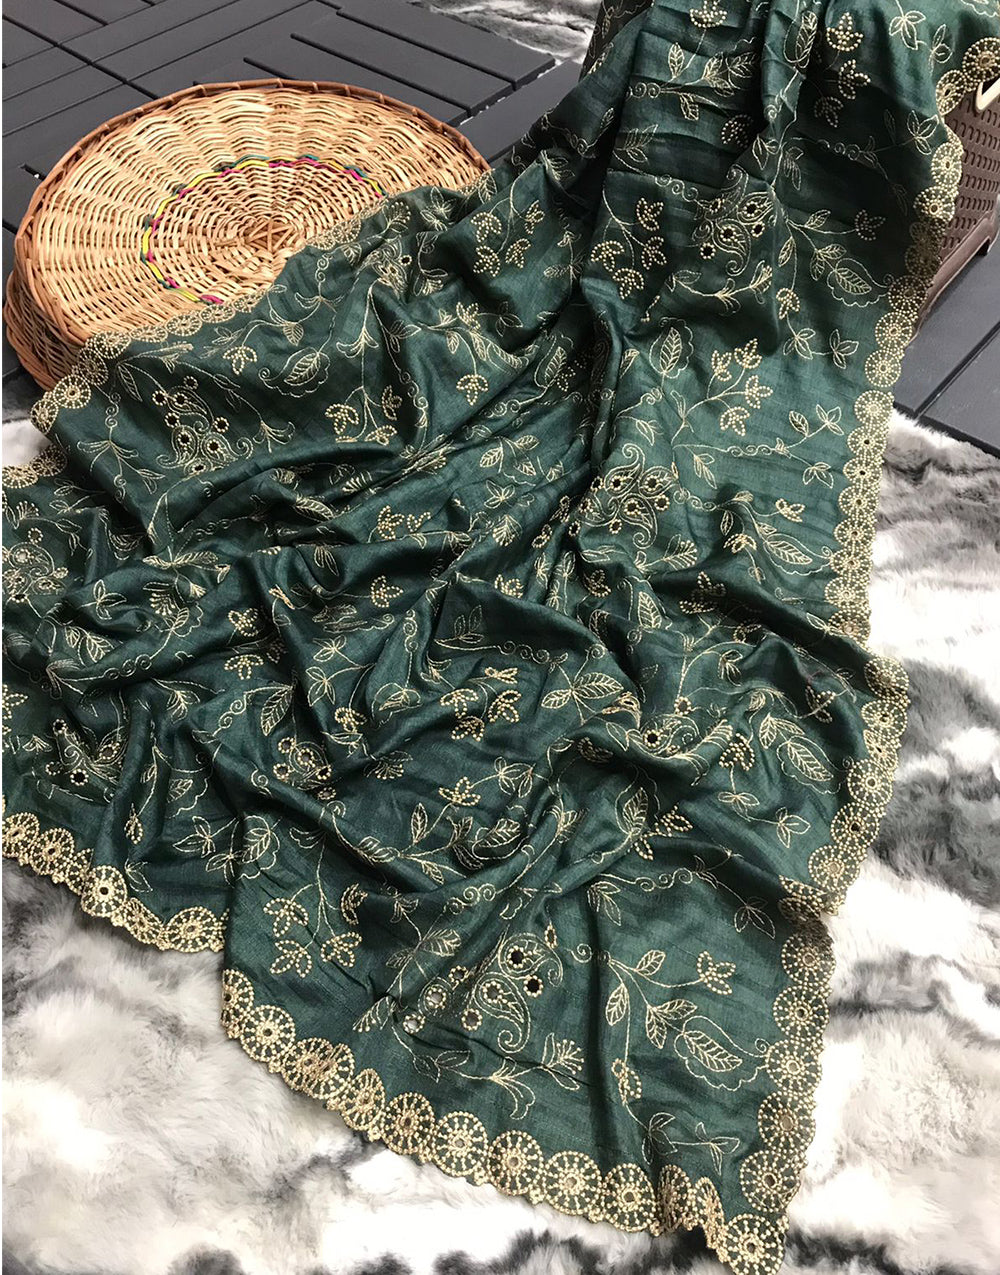 Dark Green Soft Silk Saree With Handwork & Cutwork Border